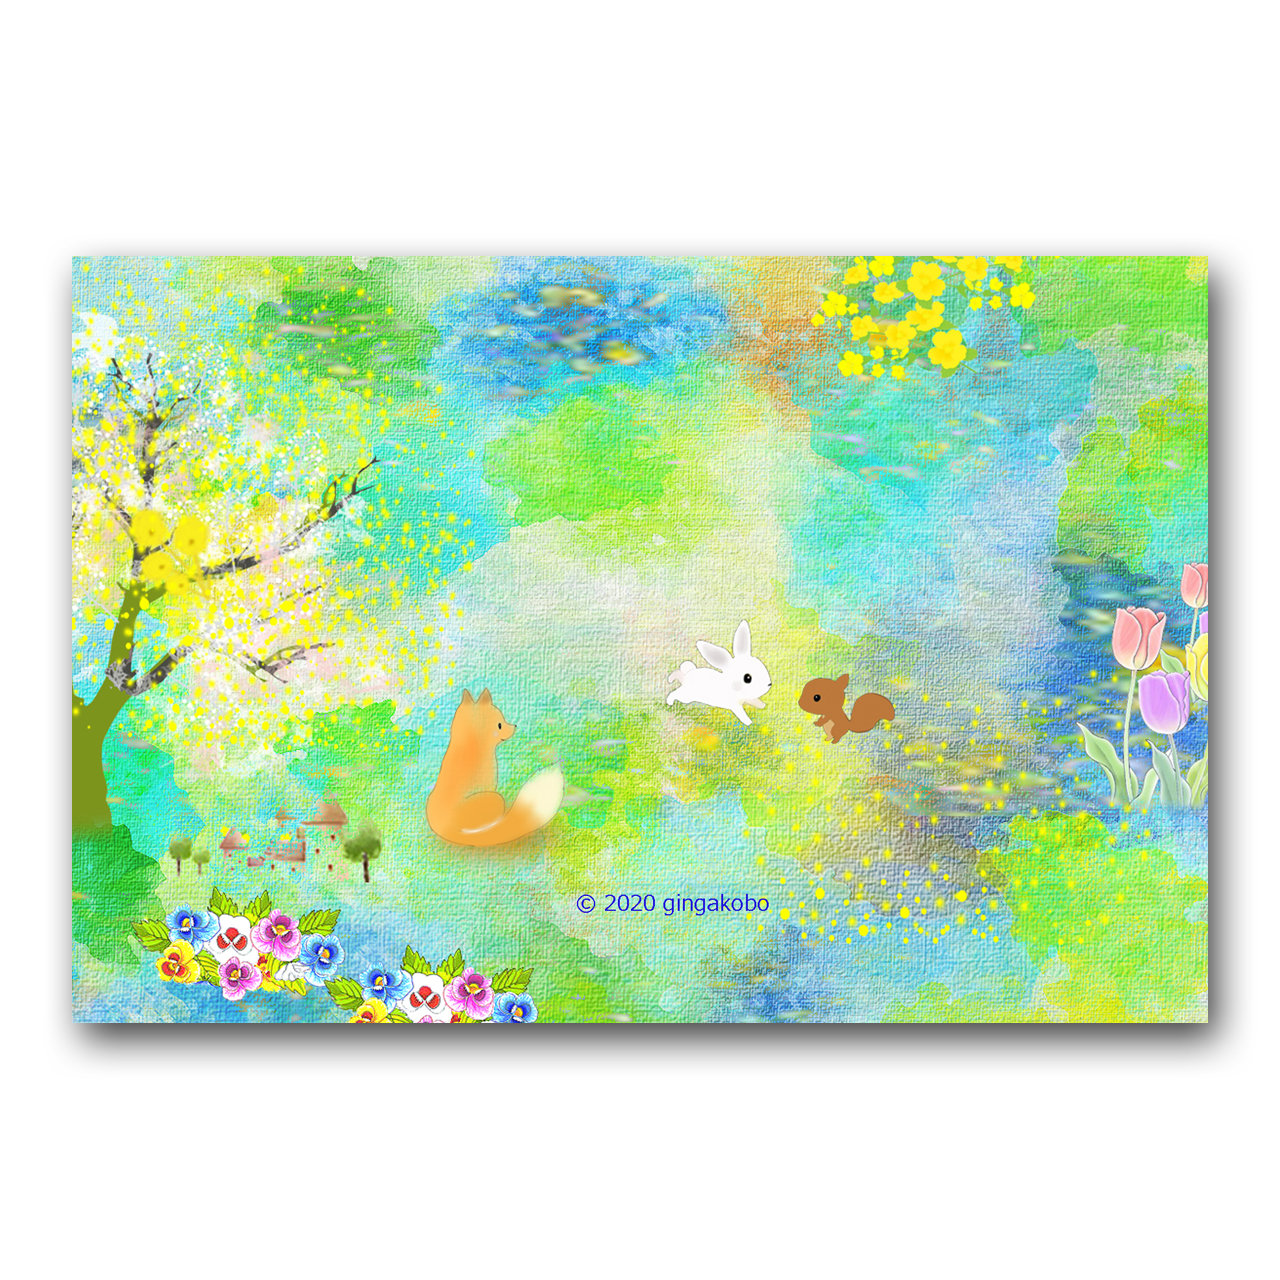 春が来たね ほっこり癒しのイラストポストカード2枚組 No 9 Iichi ハンドメイド クラフト作品 手仕事品の通販